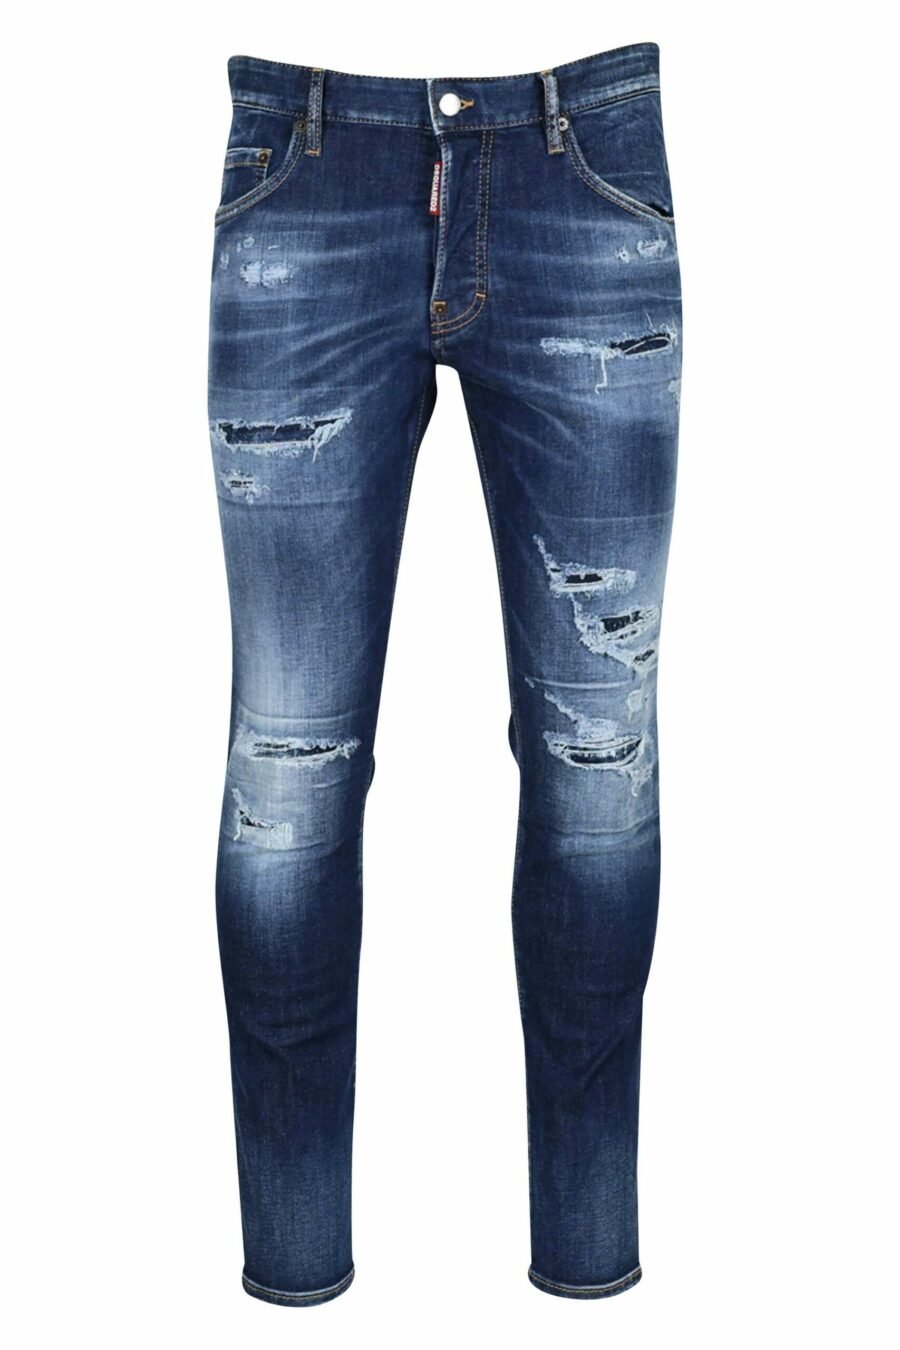 Blaue "Skater-Jeans" mit Rissen - 8054148102548 skaliert